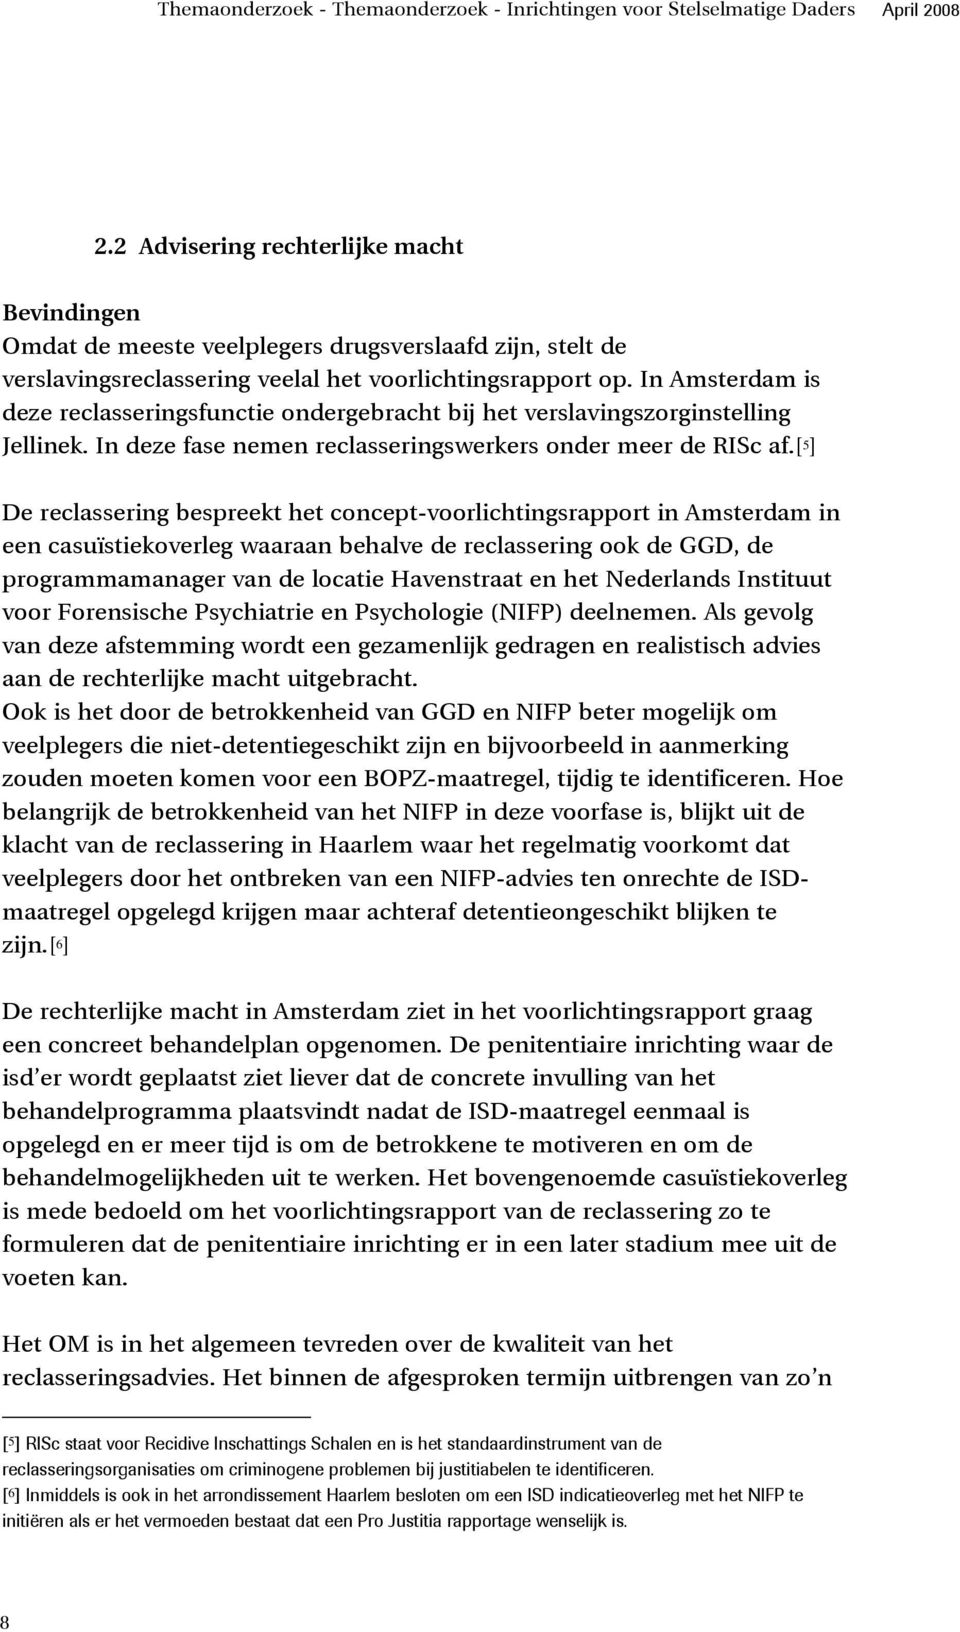 In Amsterdam is deze reclasseringsfunctie ondergebracht bij het verslavingszorginstelling Jellinek. In deze fase nemen reclasseringswerkers onder meer de RISc af.